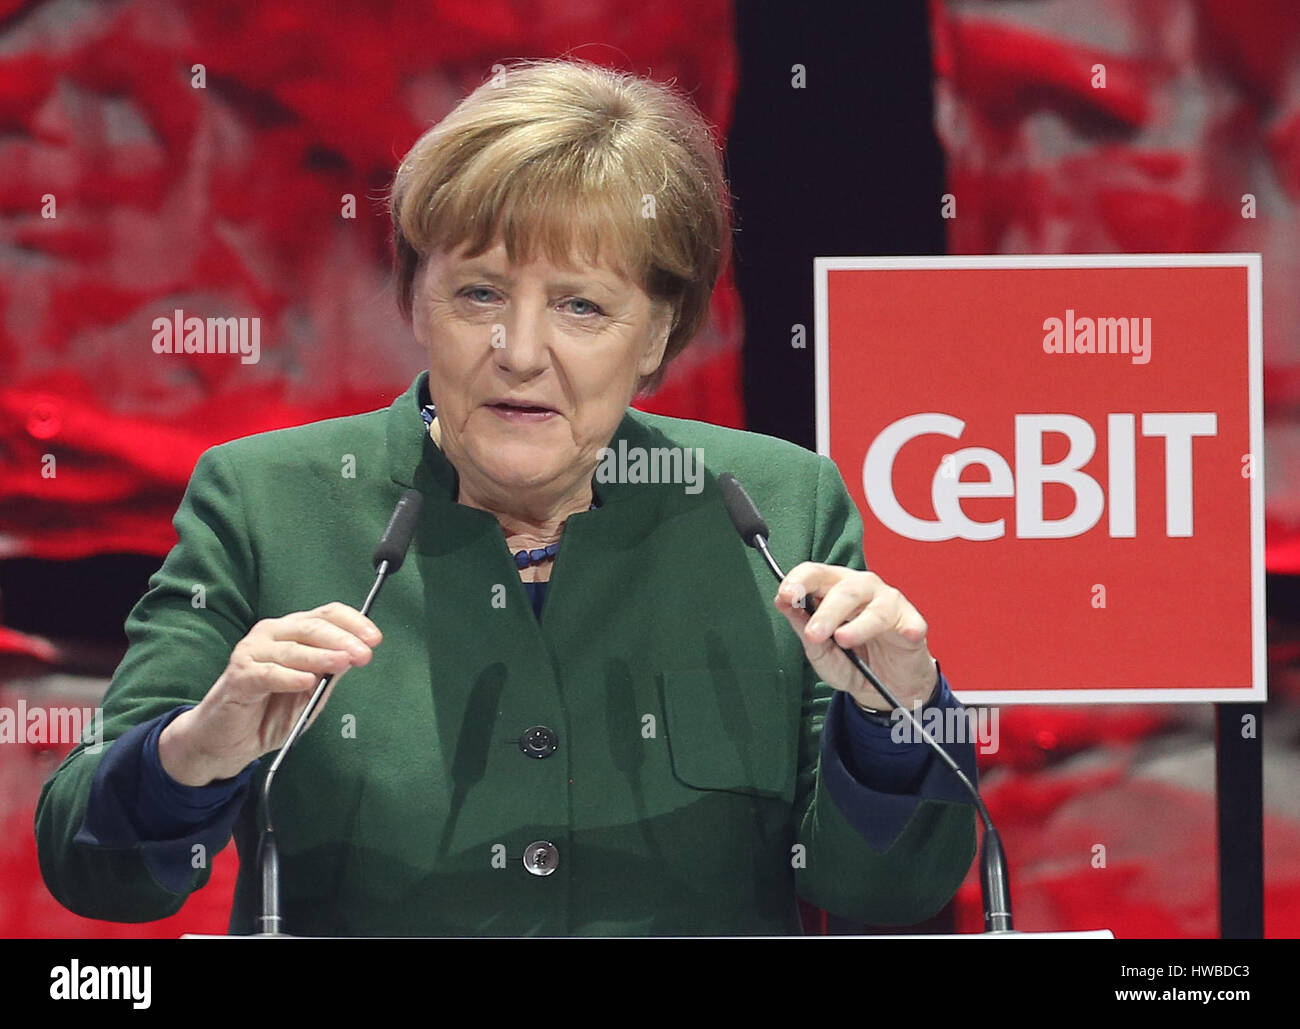 Hannover, Alemania. 19 Mar, 2017. La Canciller alemana Angela Merkel (CDU) hablando en la inauguración de la feria CeBIT en Hannover, Alemania, el 19 de marzo de 2017. Japón es el país socio de la CeBIT 2017. Foto: Friso Gentsch/dpa/Alamy Live News Foto de stock